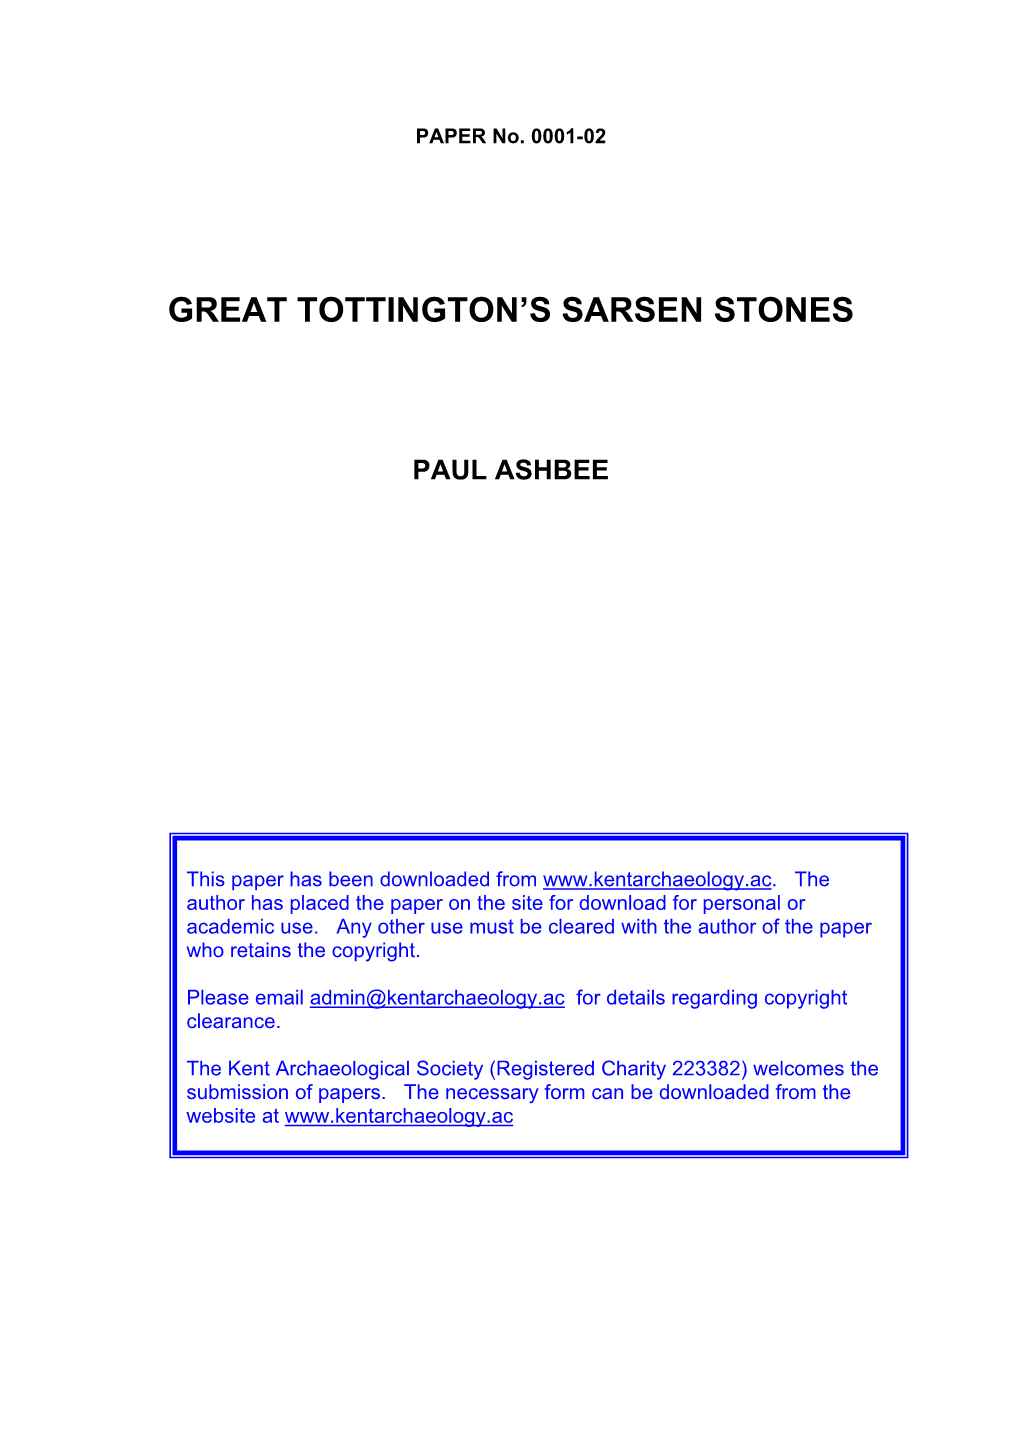 Great Tottington's Sarsen Stones